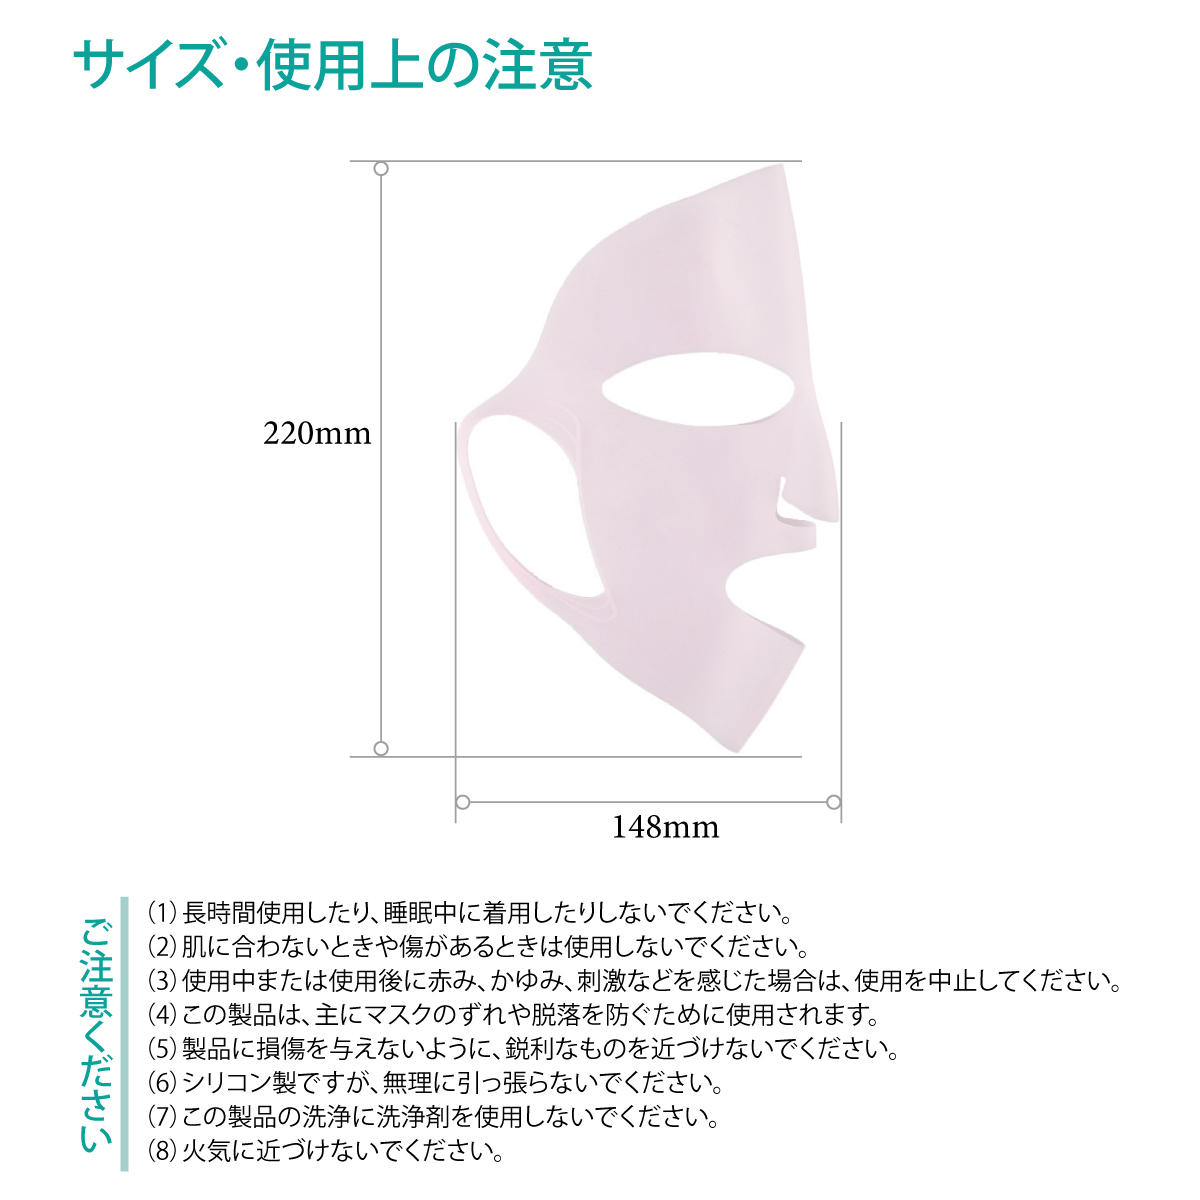 シリコンマスク 2色セット プロズビ シリコンホールドマスク シートパック フェイスマスク フェイスシート パック フェイス 顔パック コスメ  silicone-mask | TK-JIANG